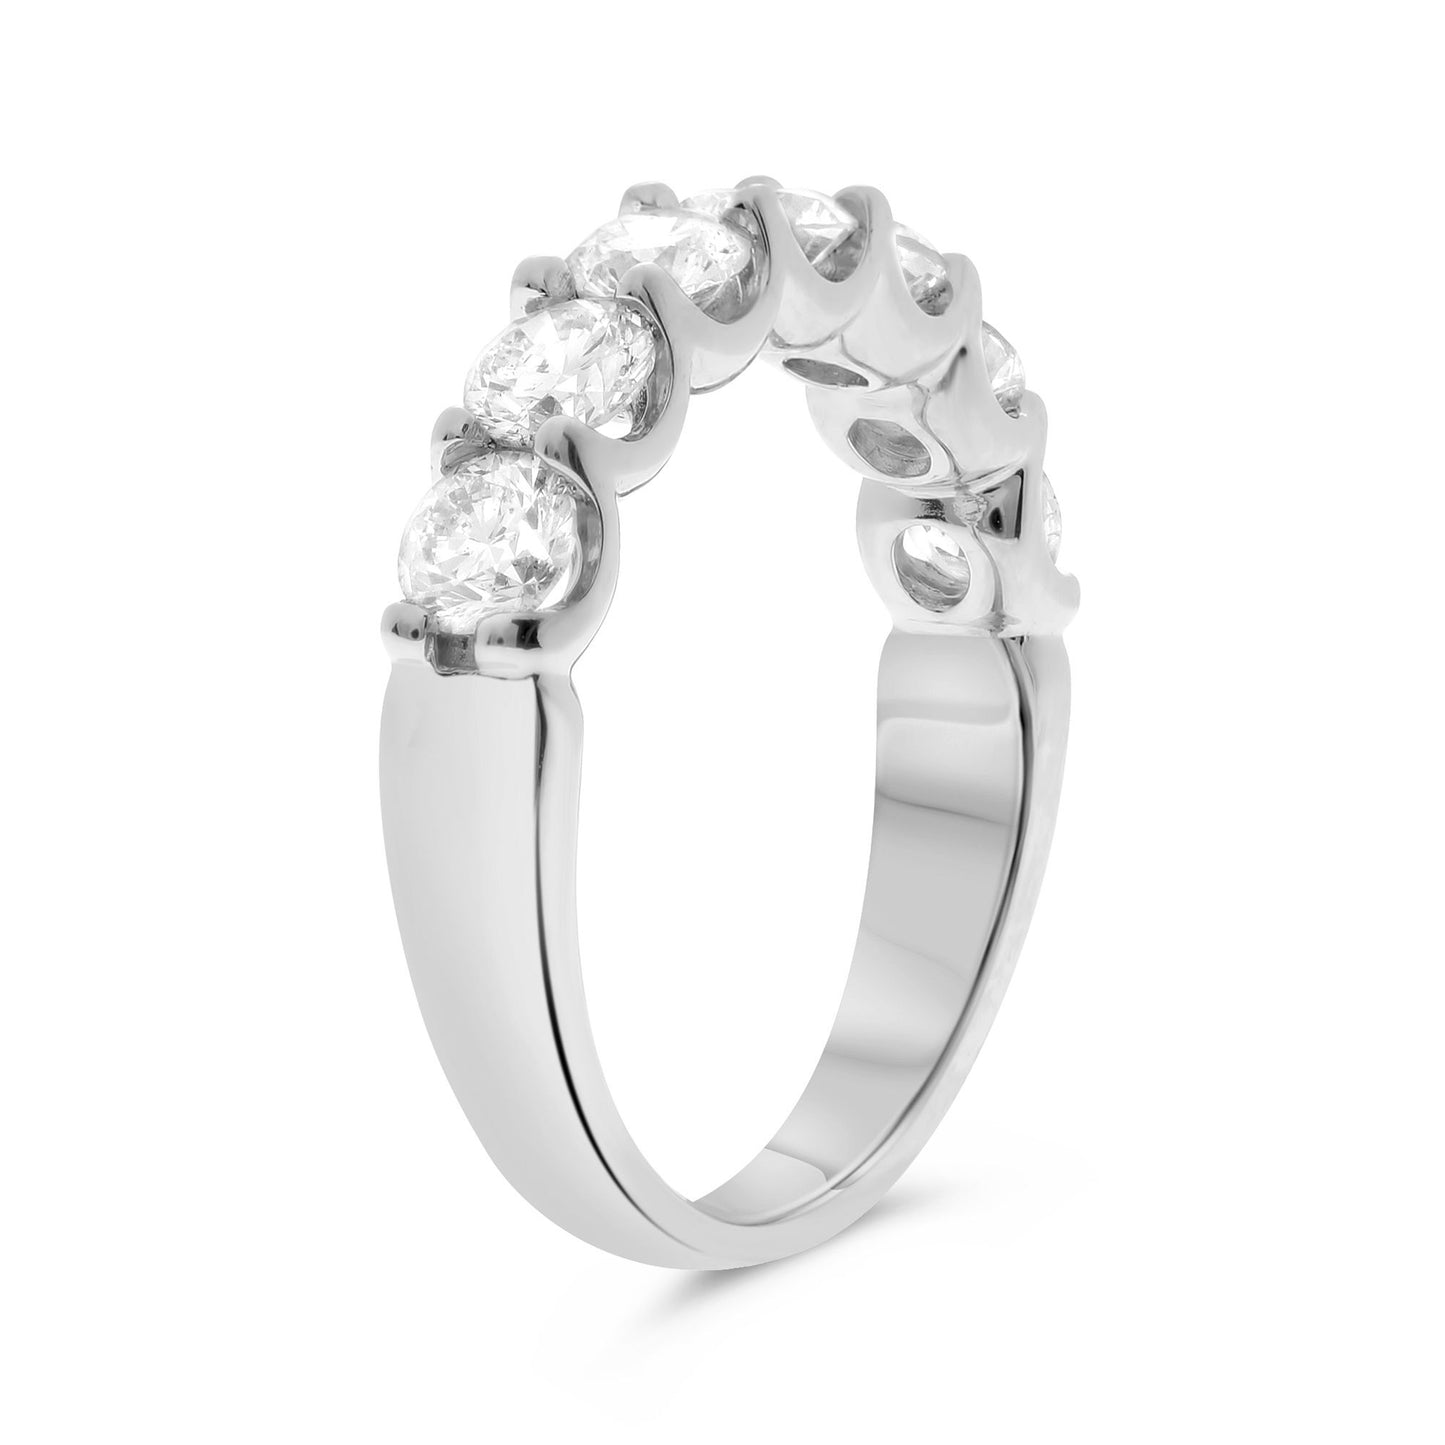 U-Prong Wedding Ring in 14K White Gold